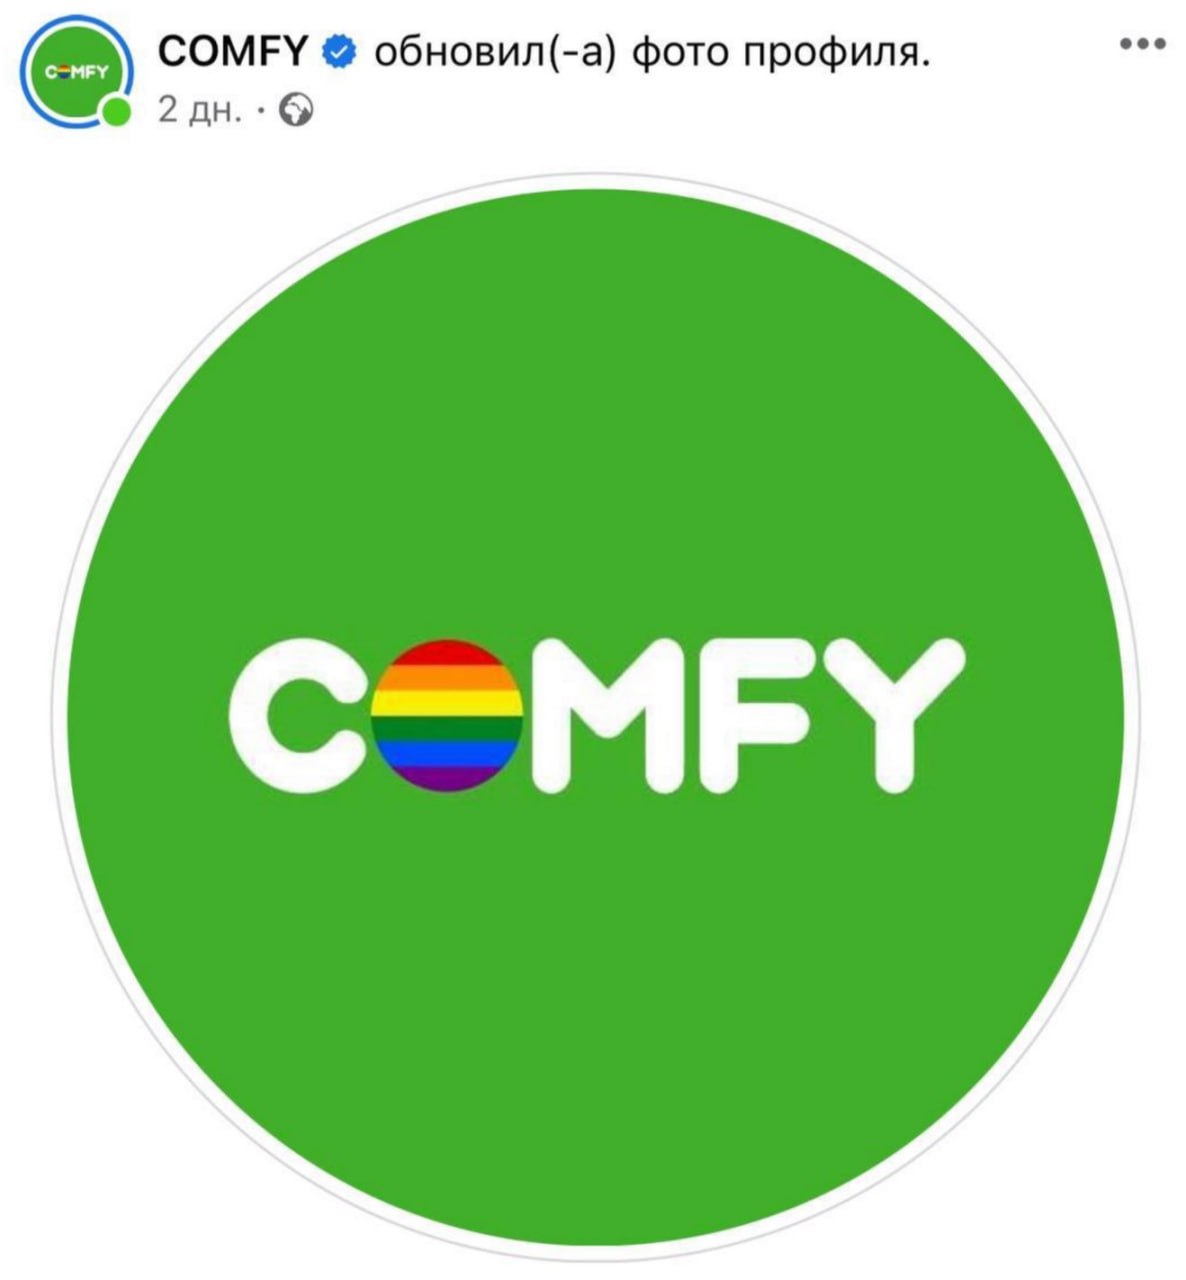 Магазин Comfy изменил свое лого, добавив радужную расцветку вместо буквы О